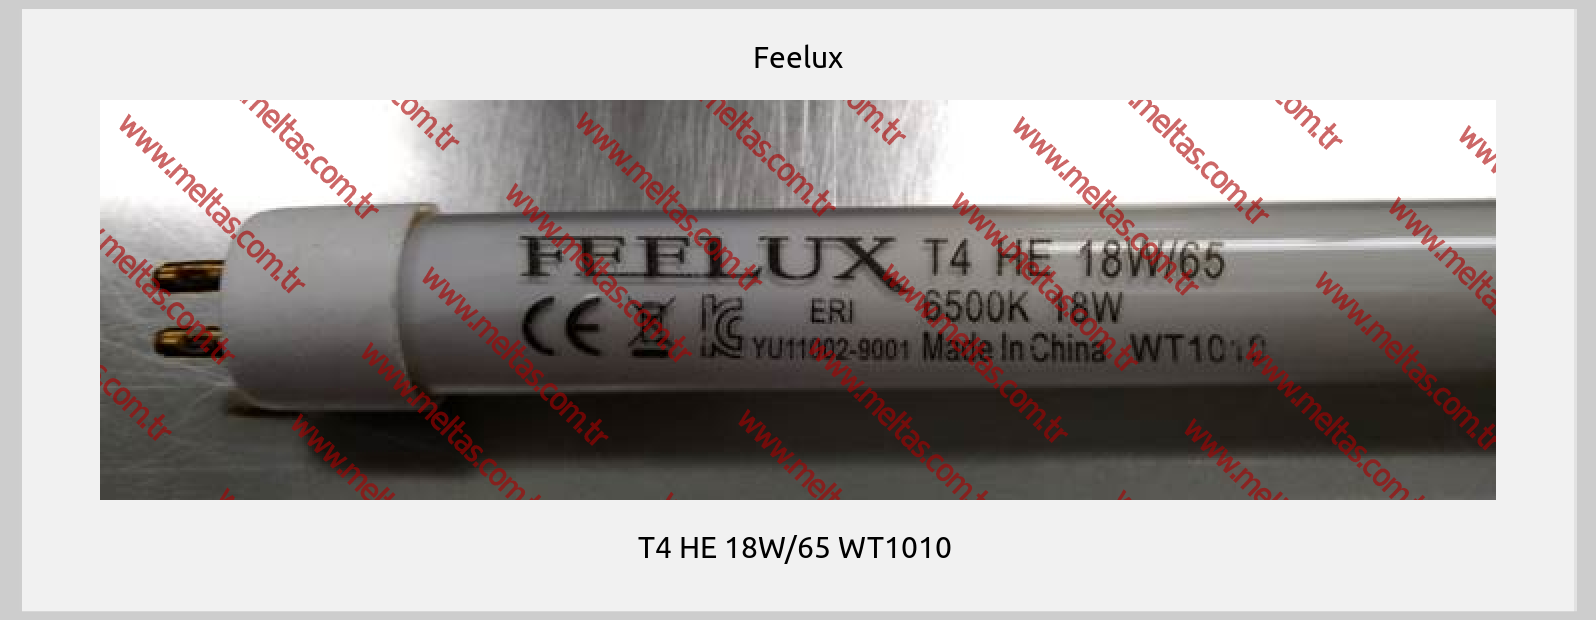 Feelux - T4 HE 18W/65 WT1010 